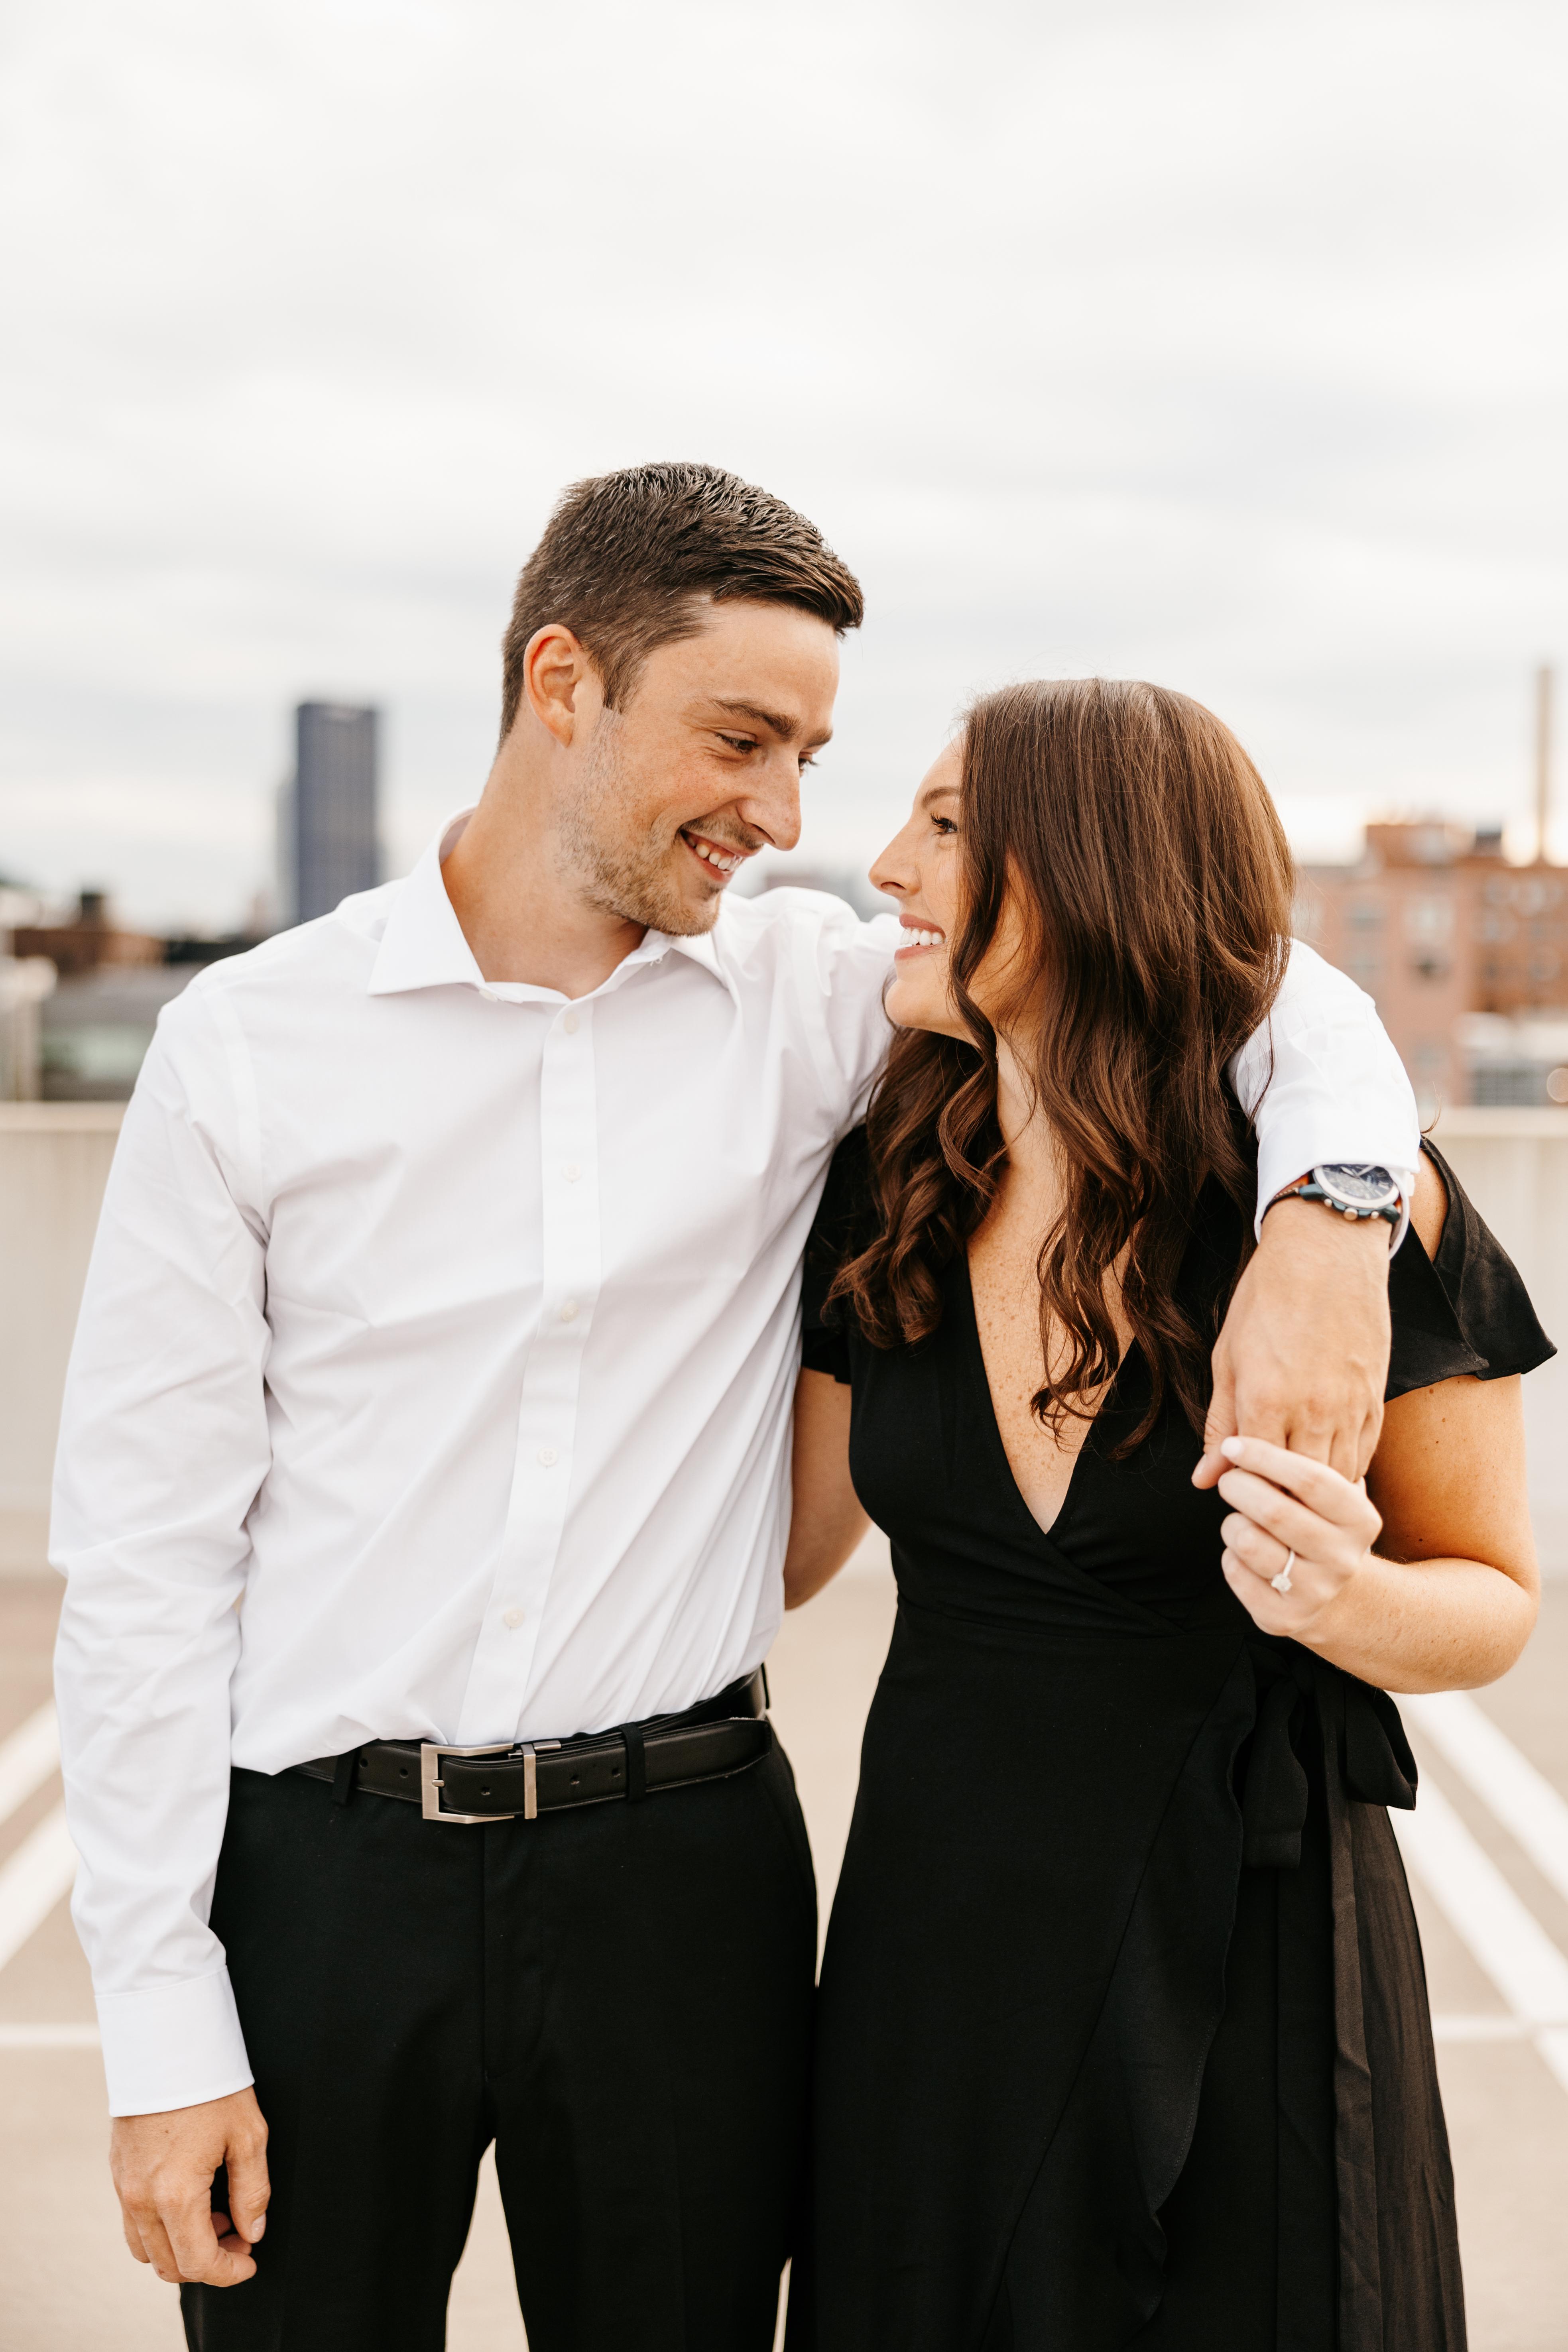 The Wedding Website of Brooke Sanders and Sean Siegel